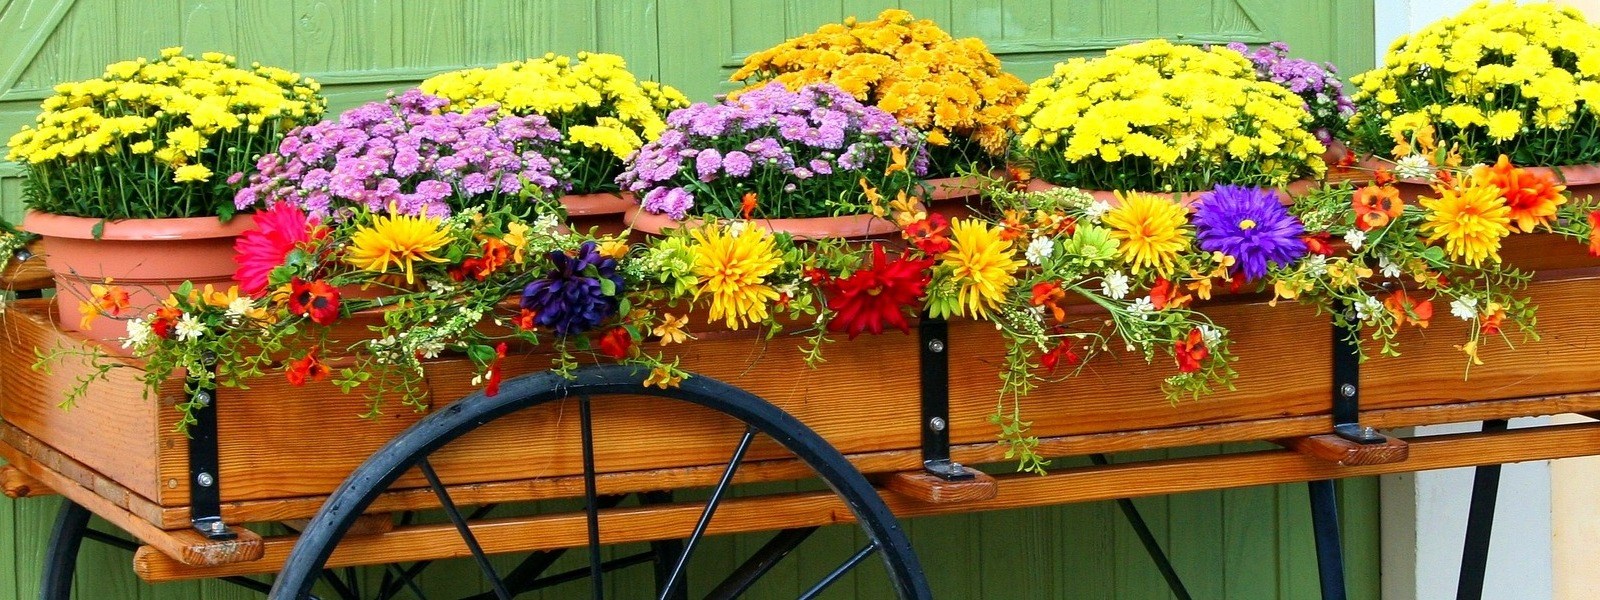 Arrangement en pots avec des fleurs annuelles